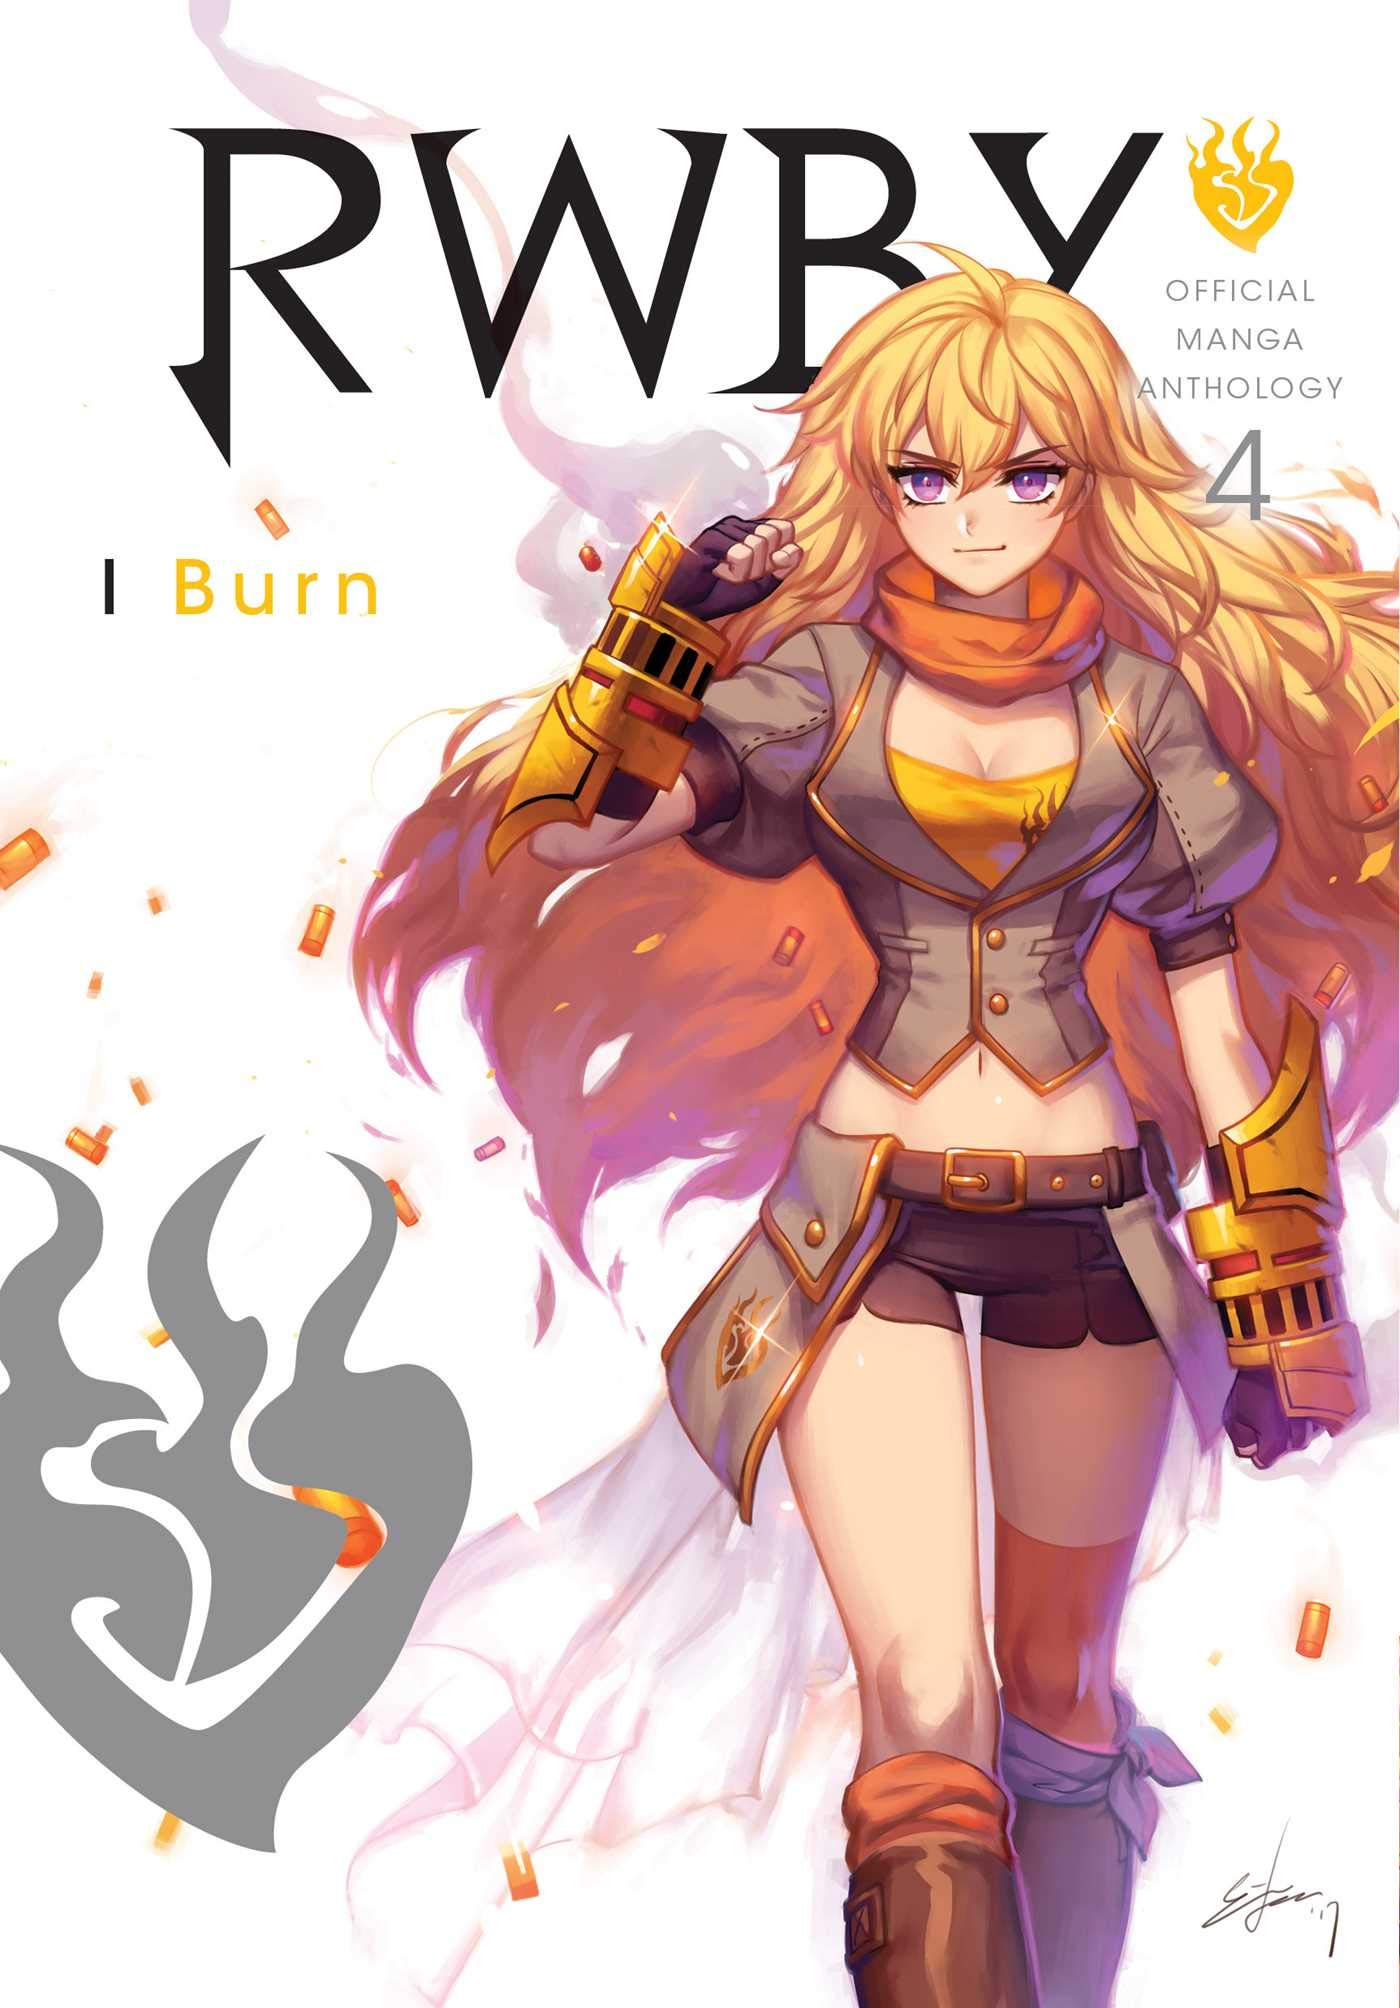 RWBY: Official Manga Anthology, Vol. 4: I Burn (4)